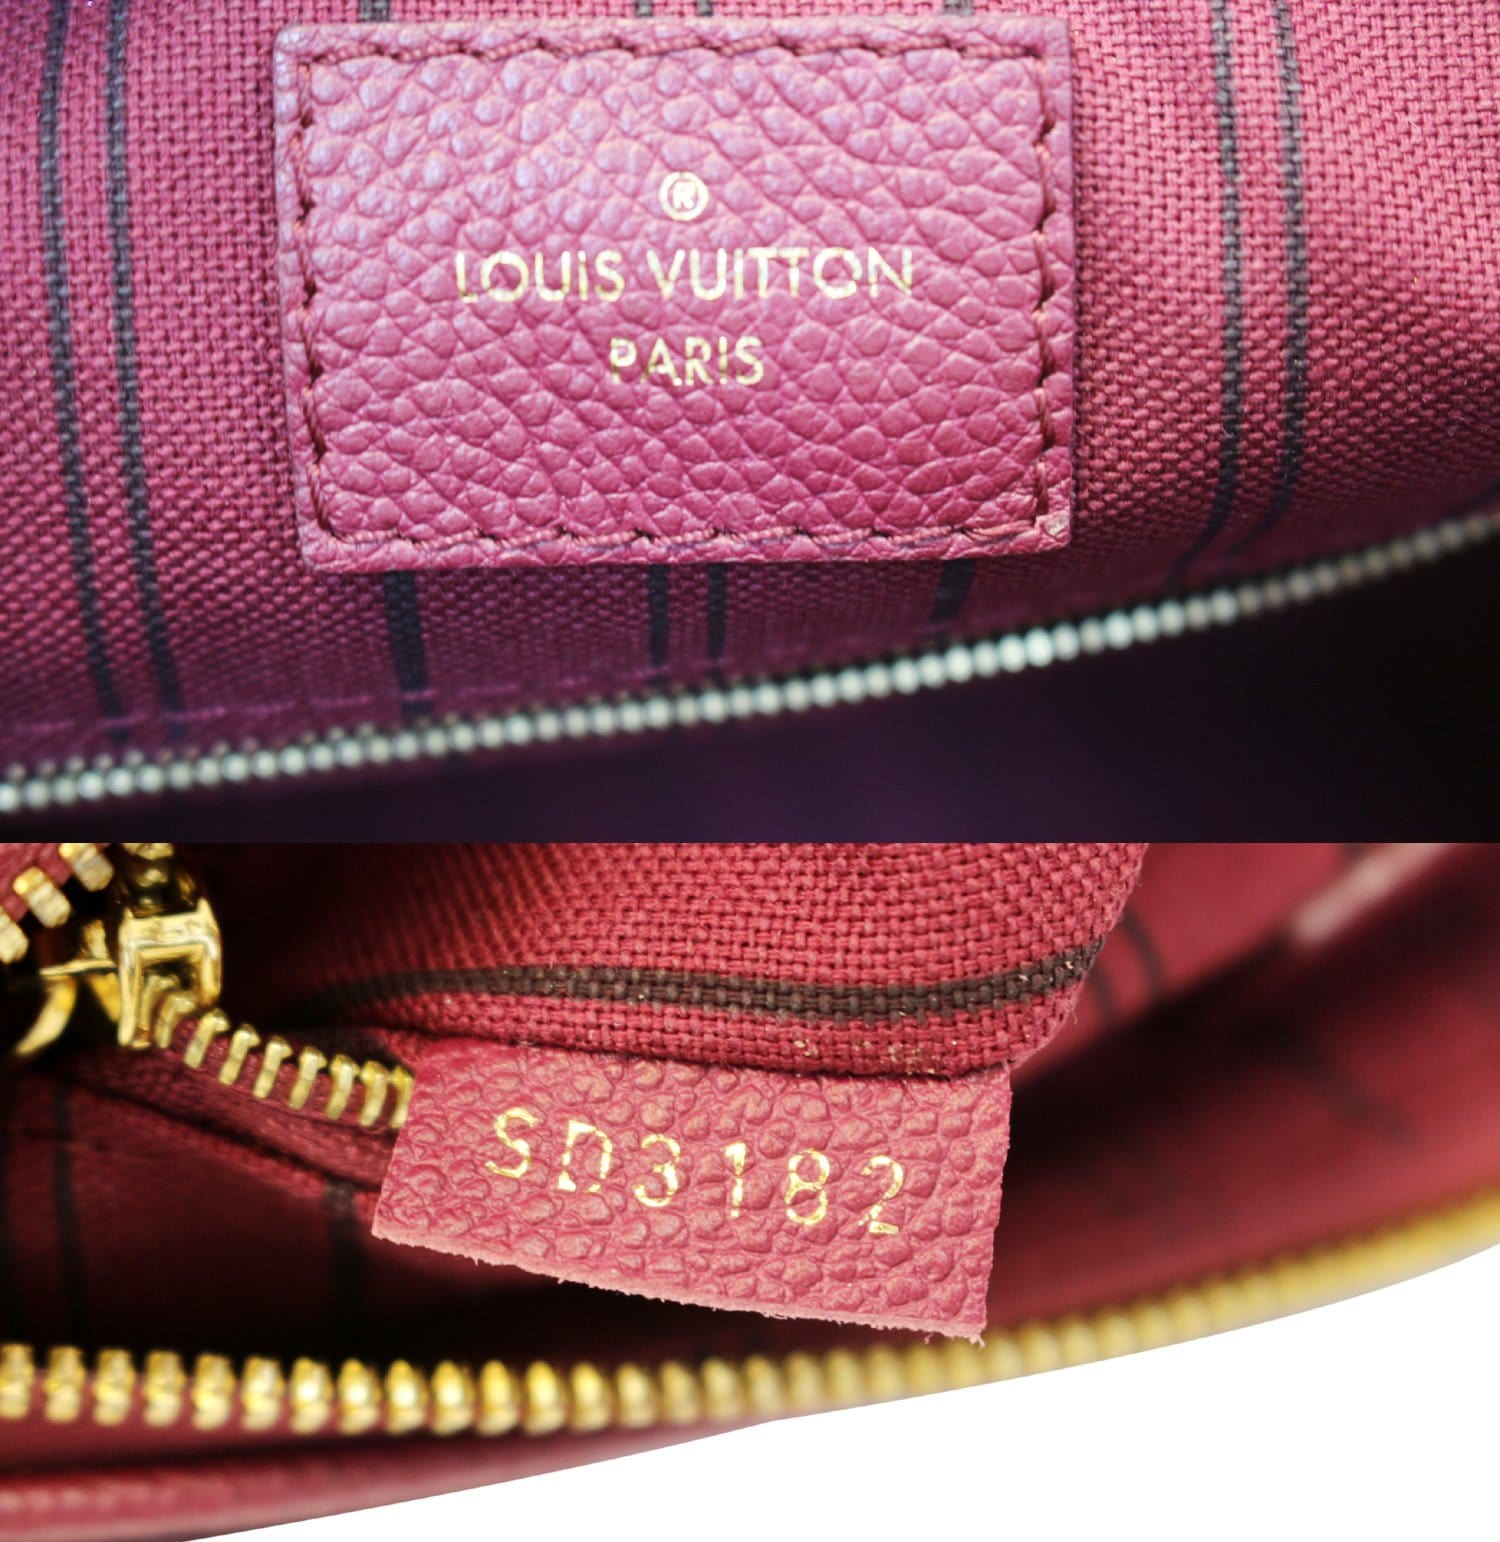 Louis Vuitton Speedy 25 Empreinte Leather Bag in Pink